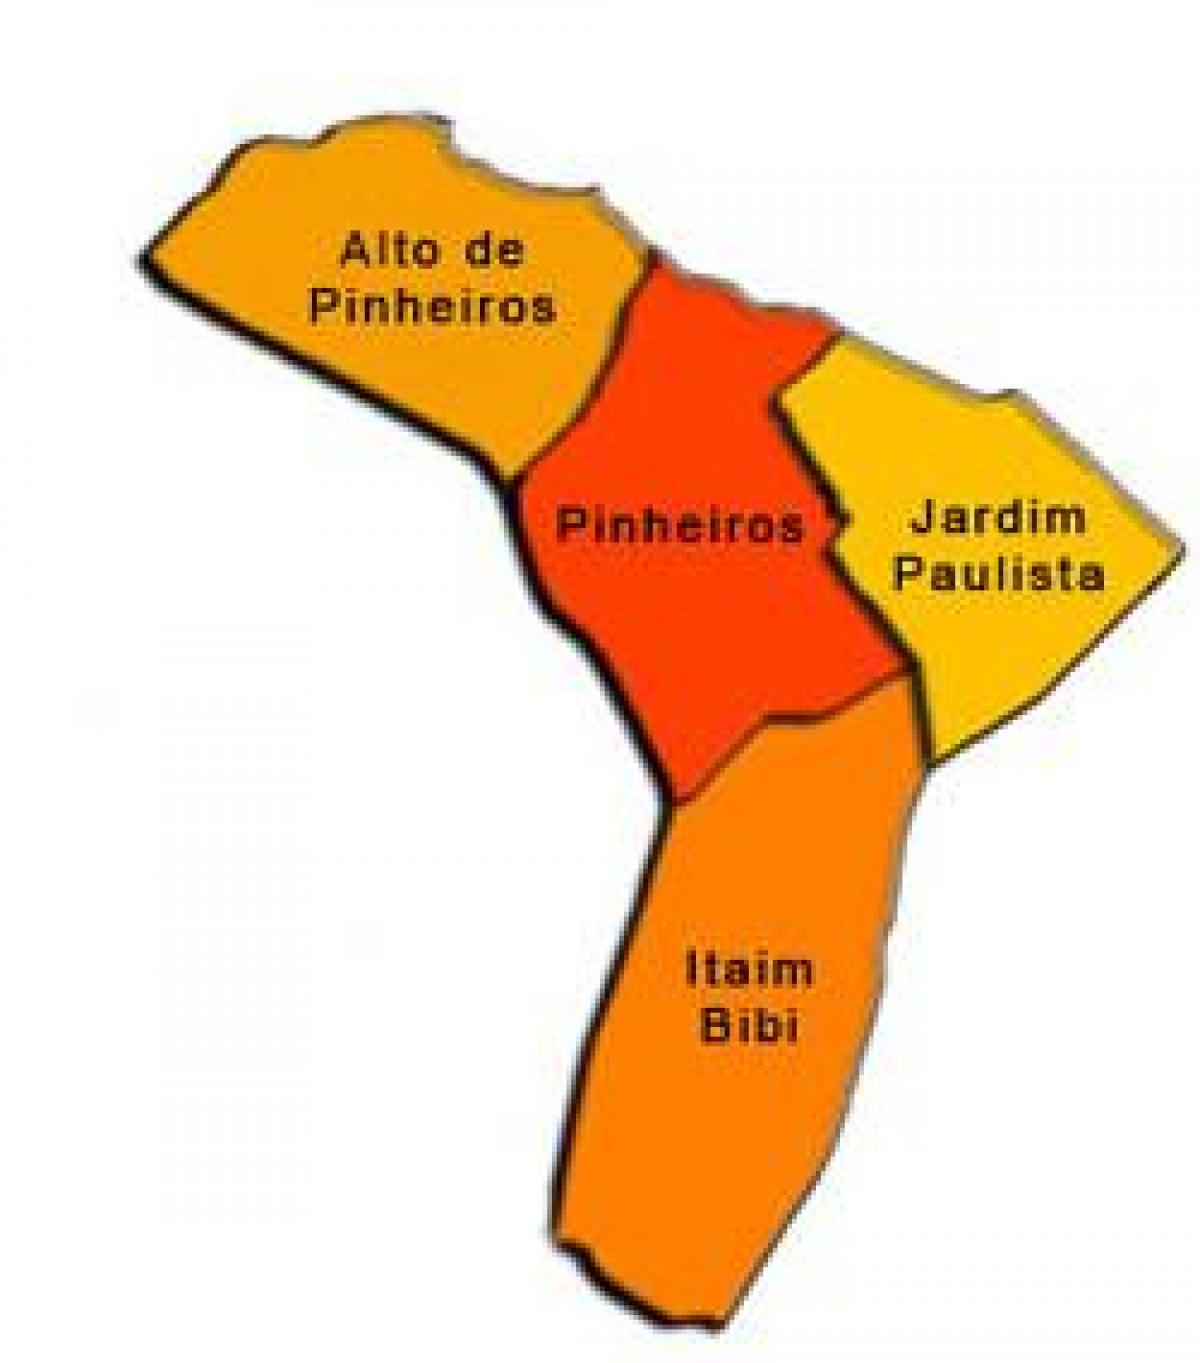 แผนที่ของ Pinheiros รายการย่อยขอ prefecture